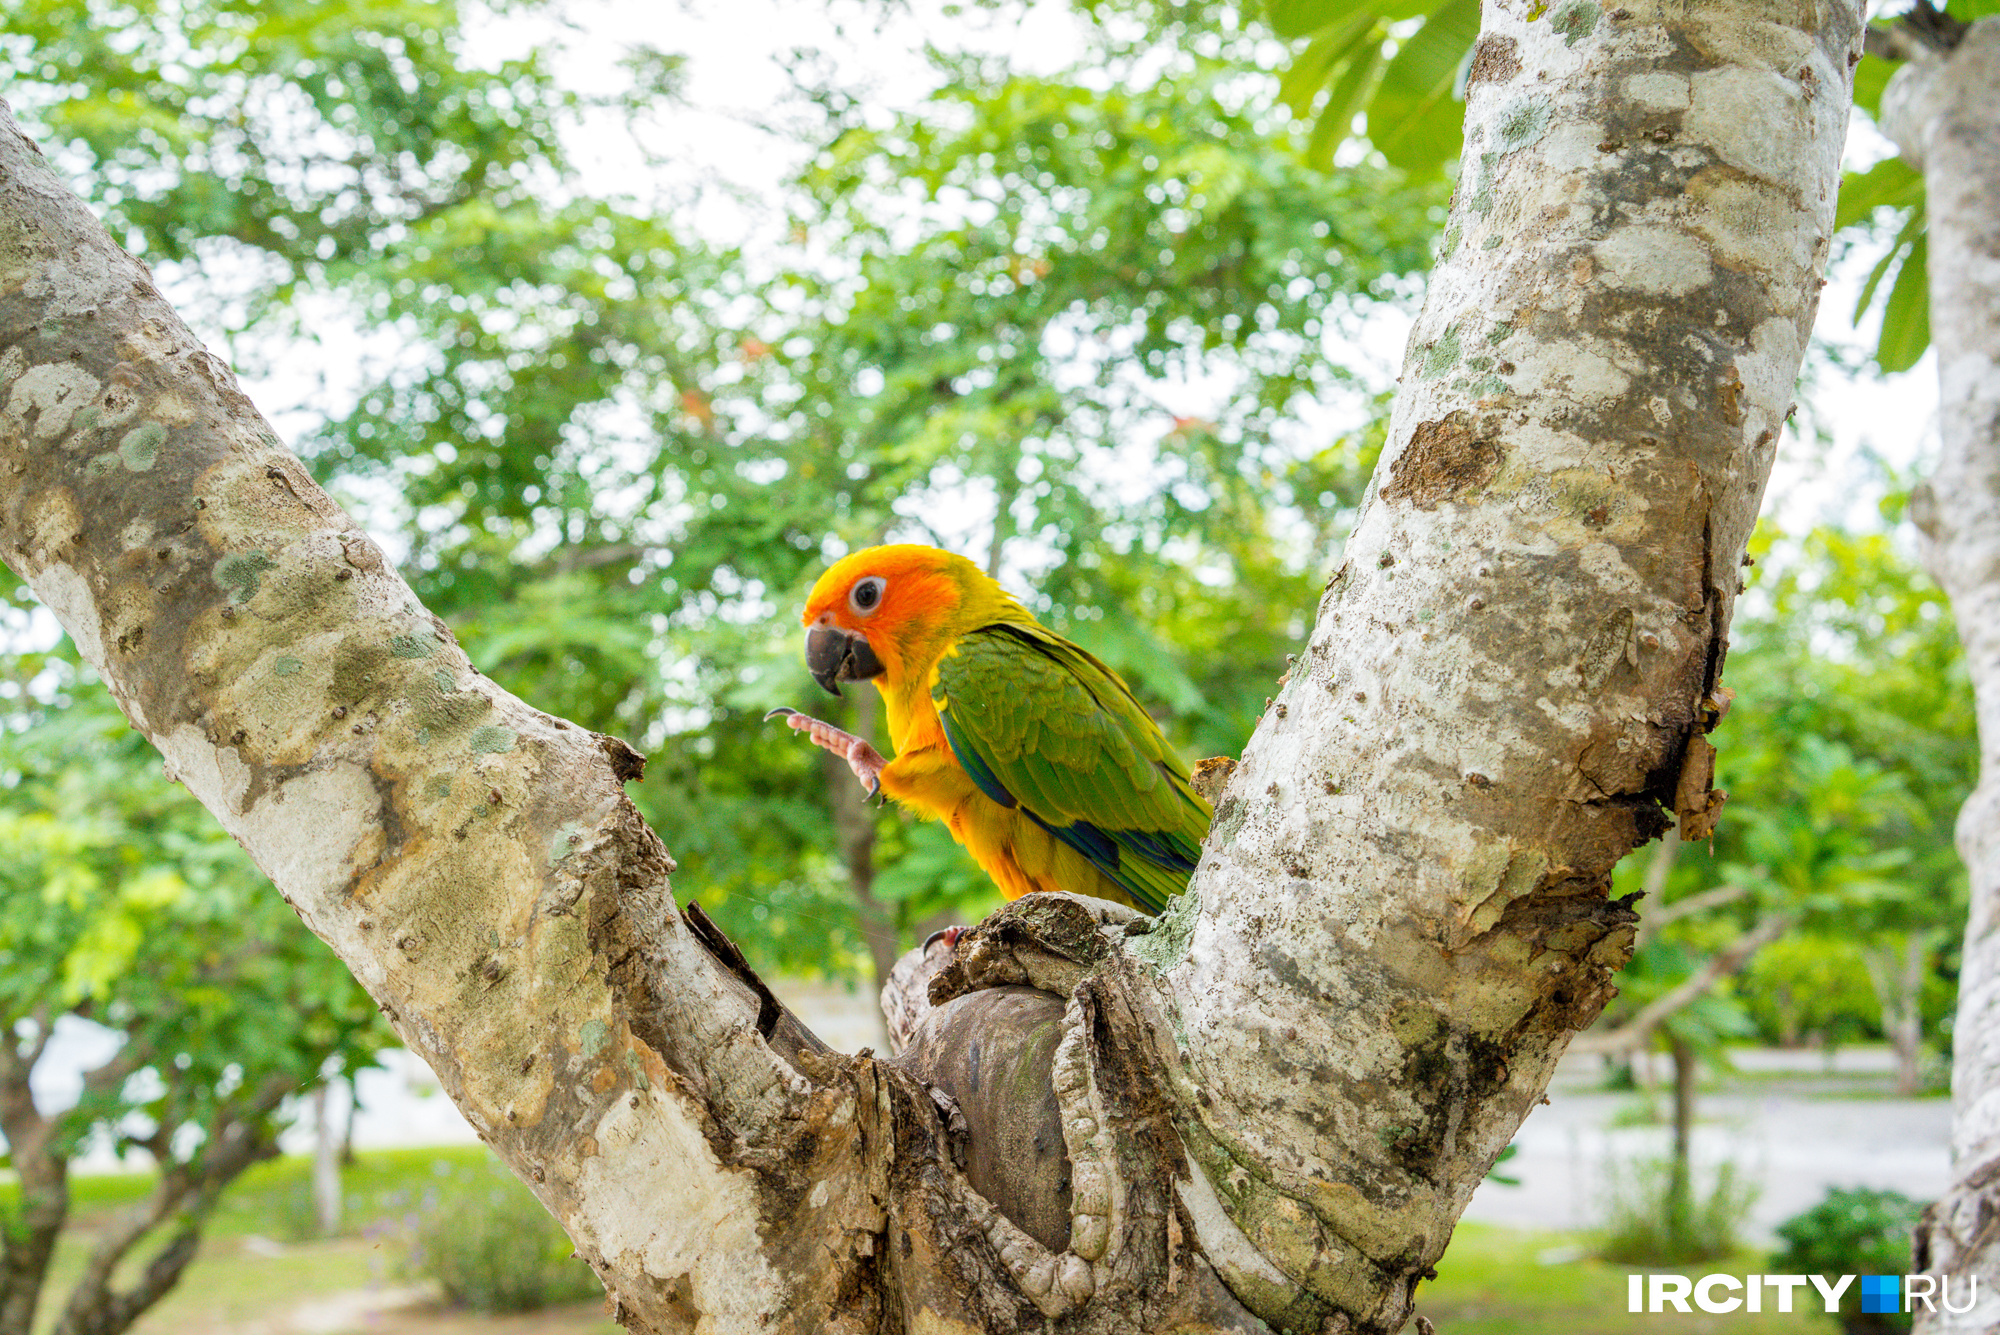 Этот попугайчик живет на территории храма и совершенно не боится людей